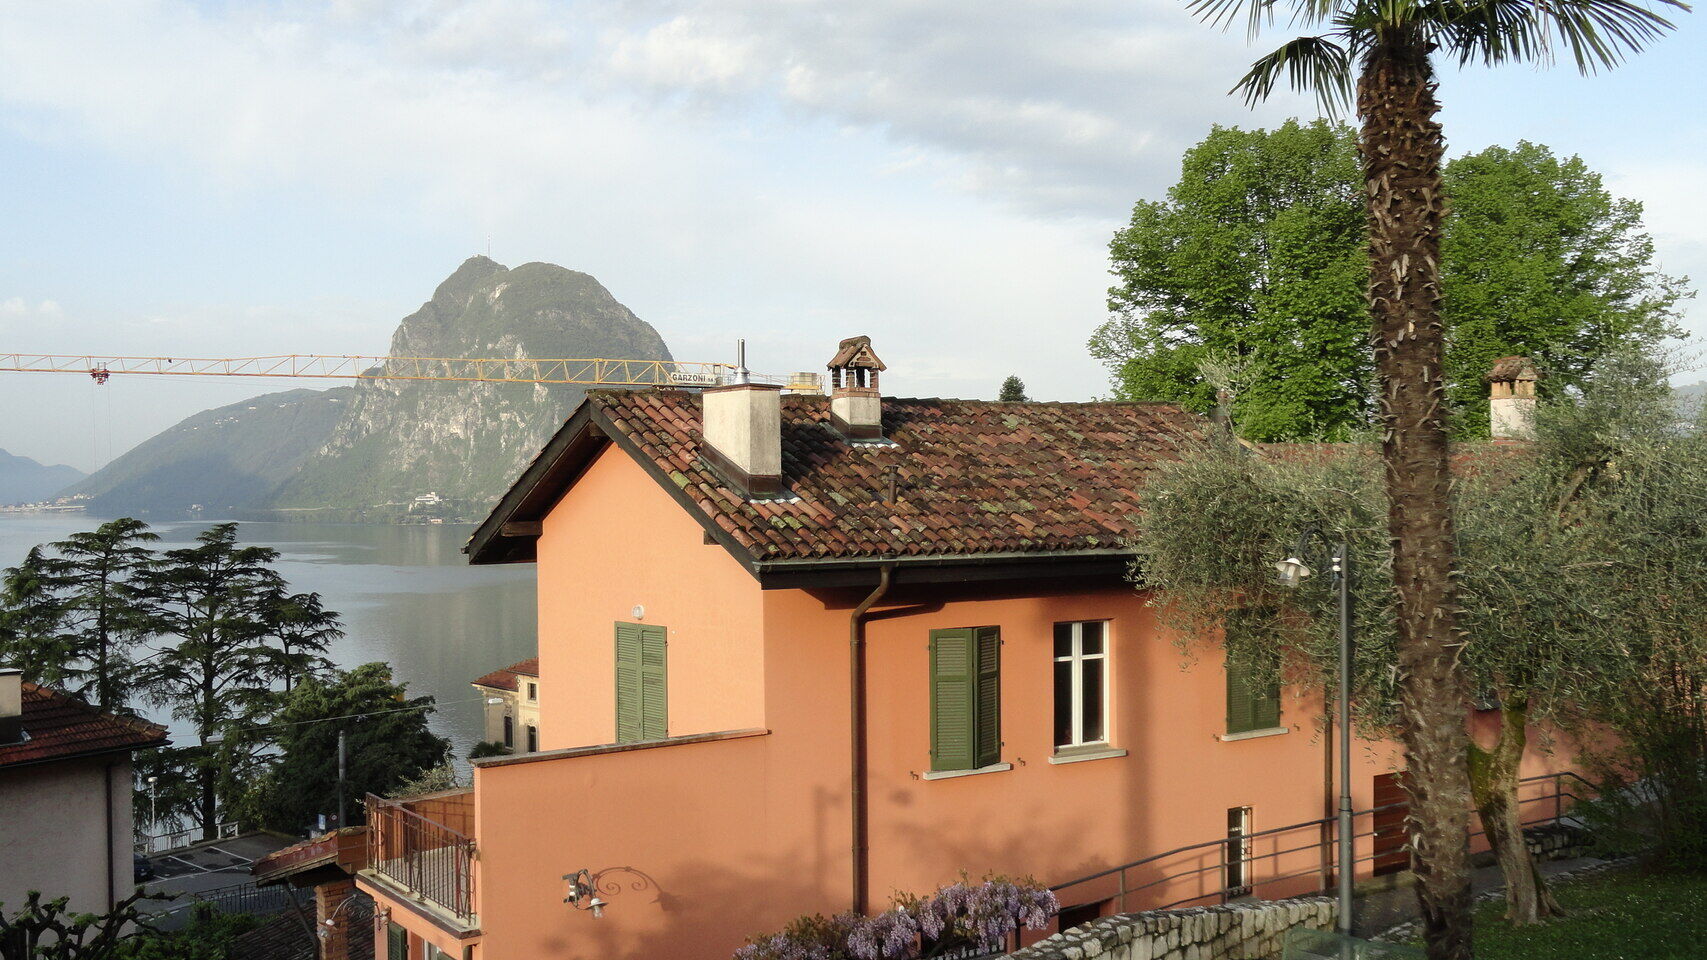 ວິທະຍາສາດມະນຸດແລະທໍາມະຊາດ: Casa Carla Cattaneo ໃນ Castagnola, ໃນອານາເຂດຂອງເທດສະບານຂອງ Lugano, ໃນ Canton Ticino: ມັນຈະເປັນເຈົ້າພາບກອງທຶນ IBSA ສໍາລັບການຄົ້ນຄວ້າວິທະຍາສາດ, ເຊິ່ງກໍານົດຕົນເອງເປົ້າຫມາຍທະເຍີທະຍານໃຫມ່.